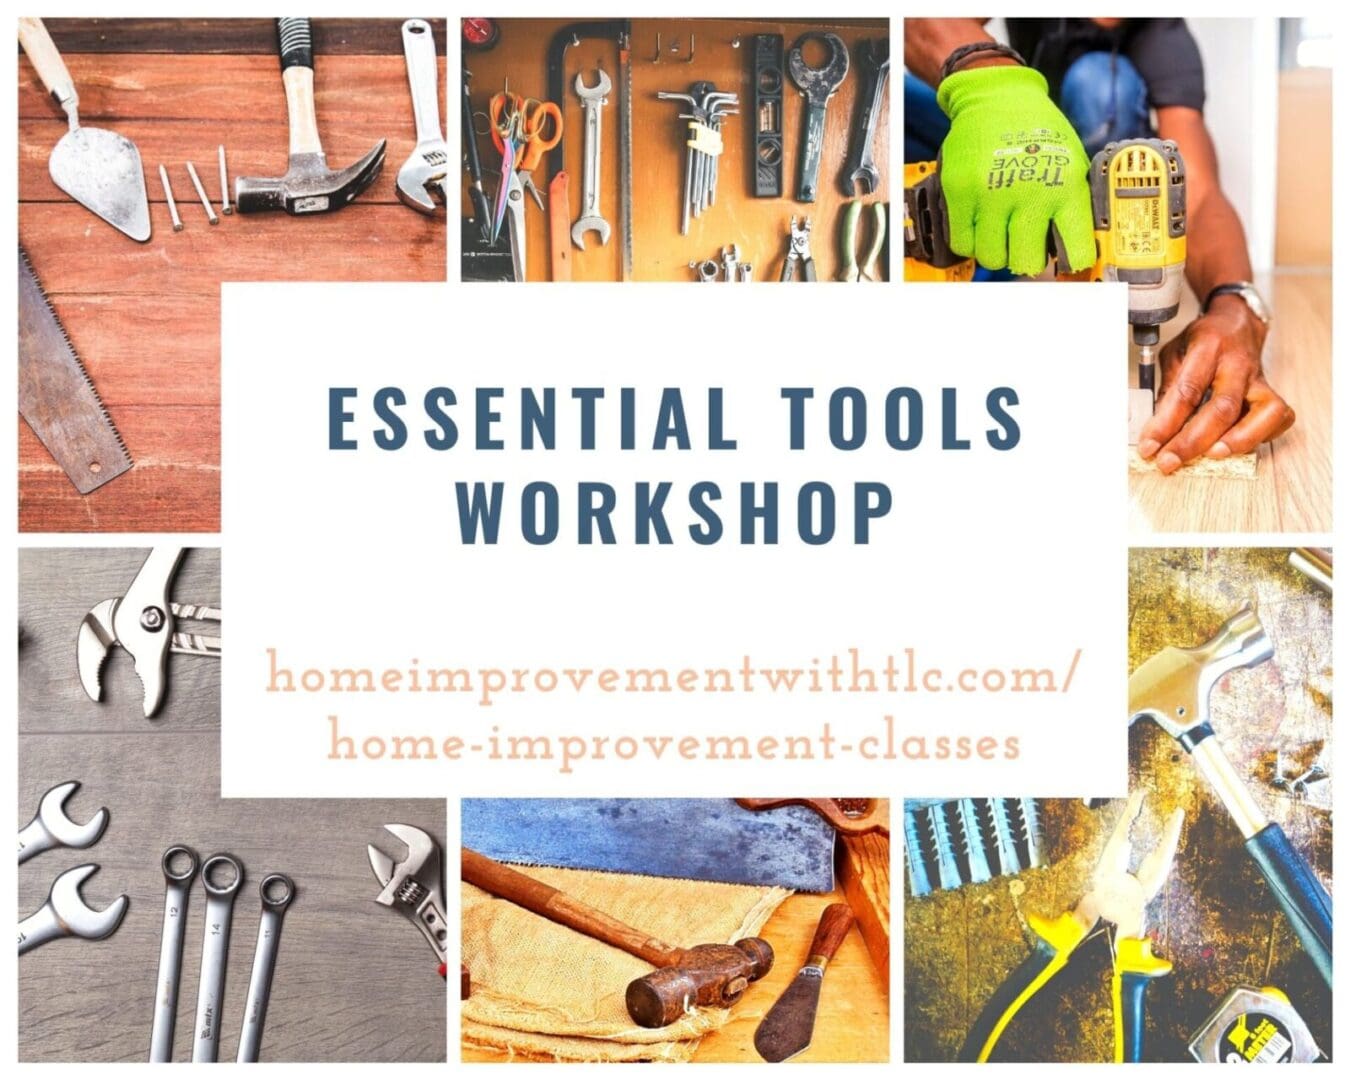 Essential tools workshop.